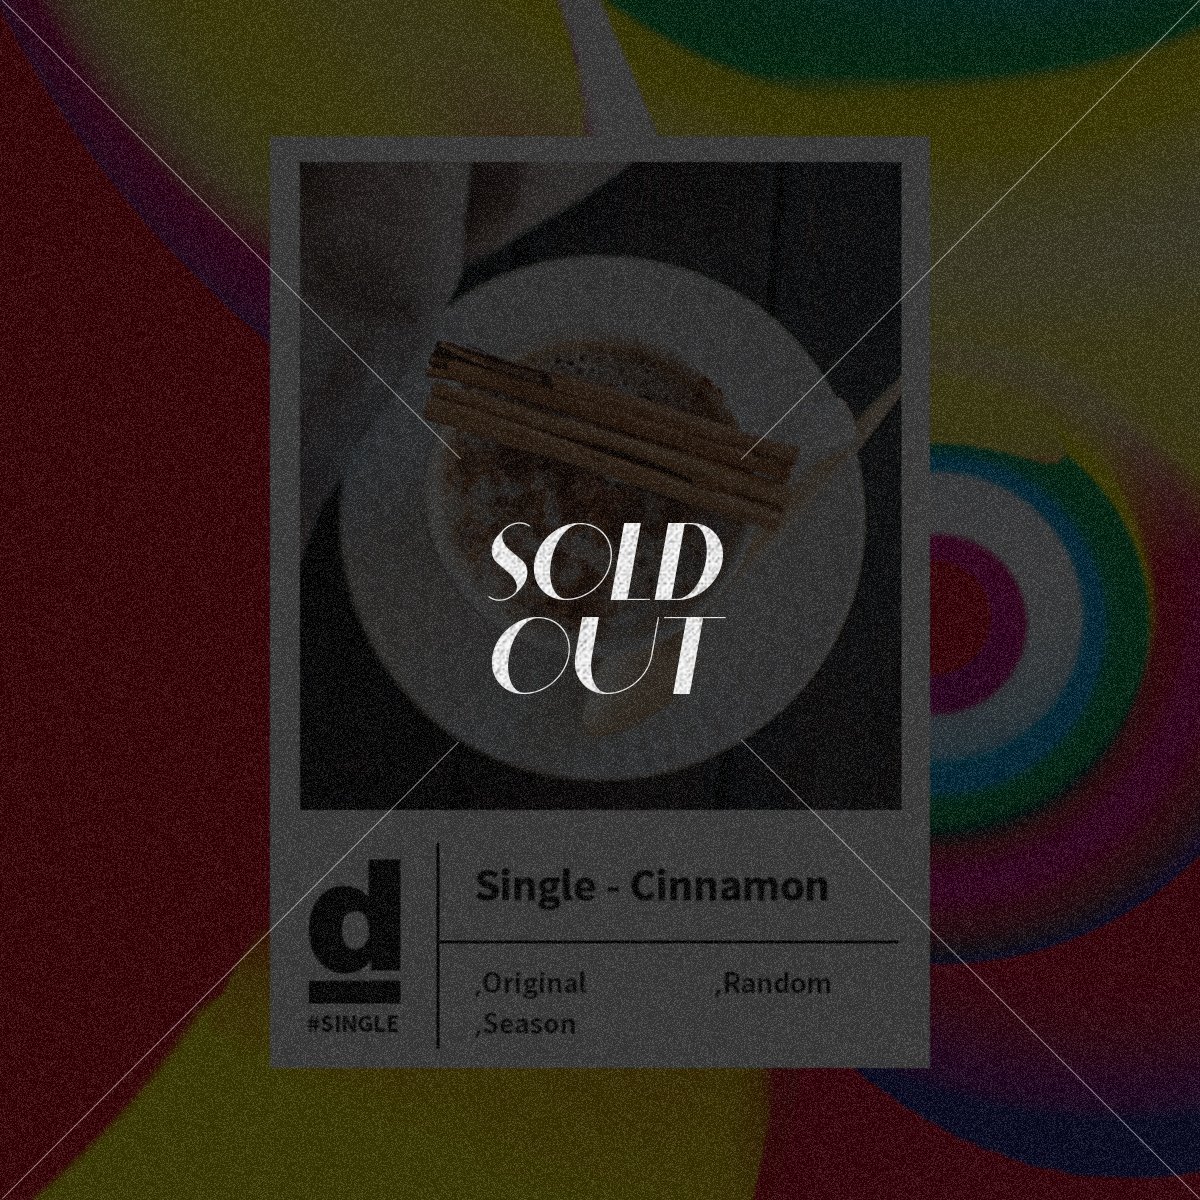 #Single Origin - Cinnamon